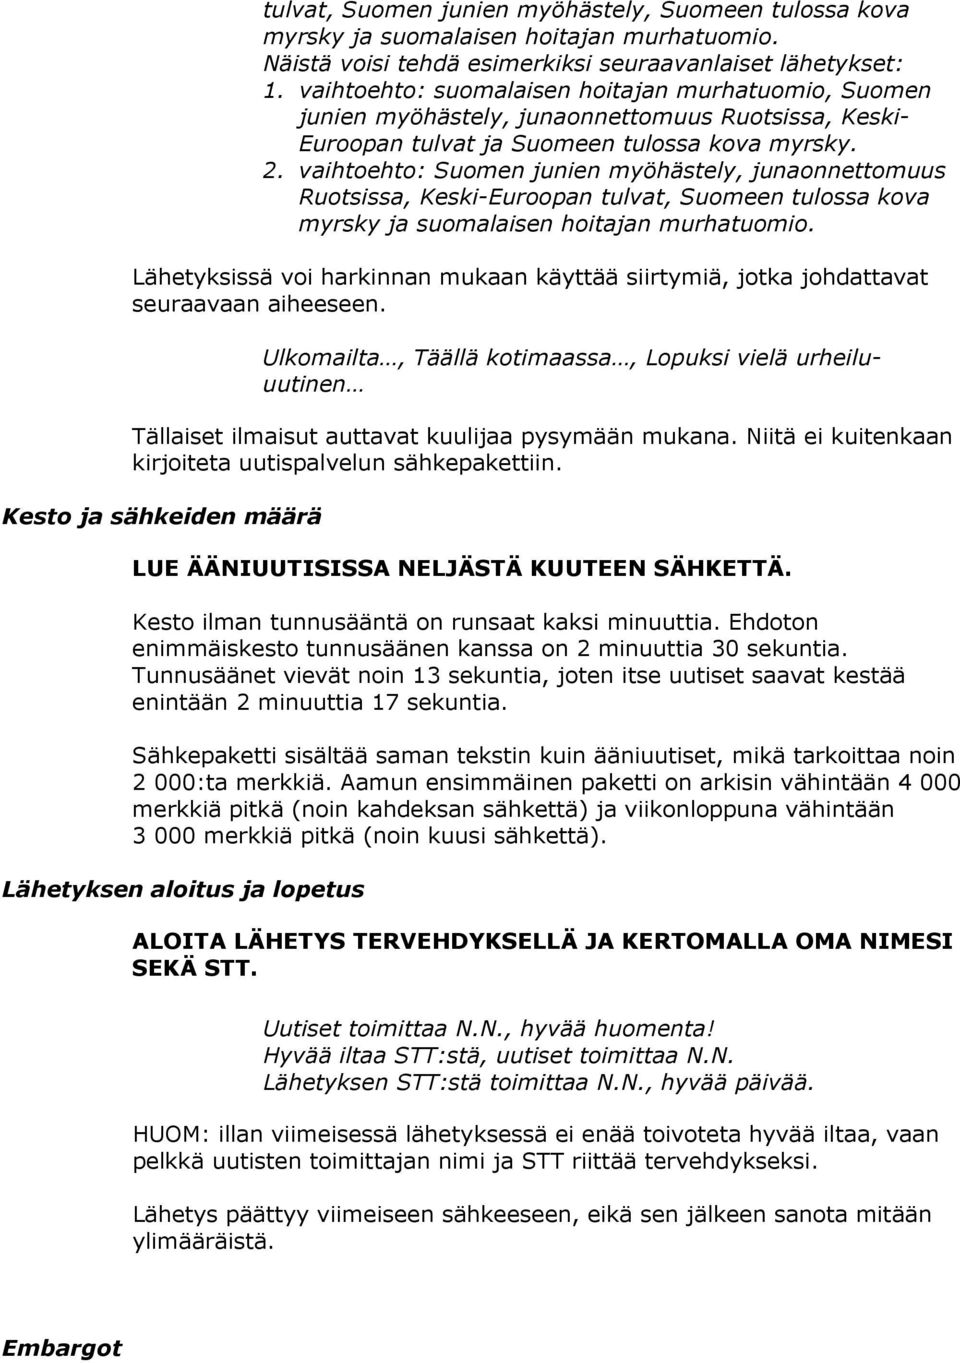 vaihtoehto: Suomen junien myöhästely, junaonnettomuus Ruotsissa, Keski-Euroopan tulvat, Suomeen tulossa kova myrsky ja suomalaisen hoitajan murhatuomio.